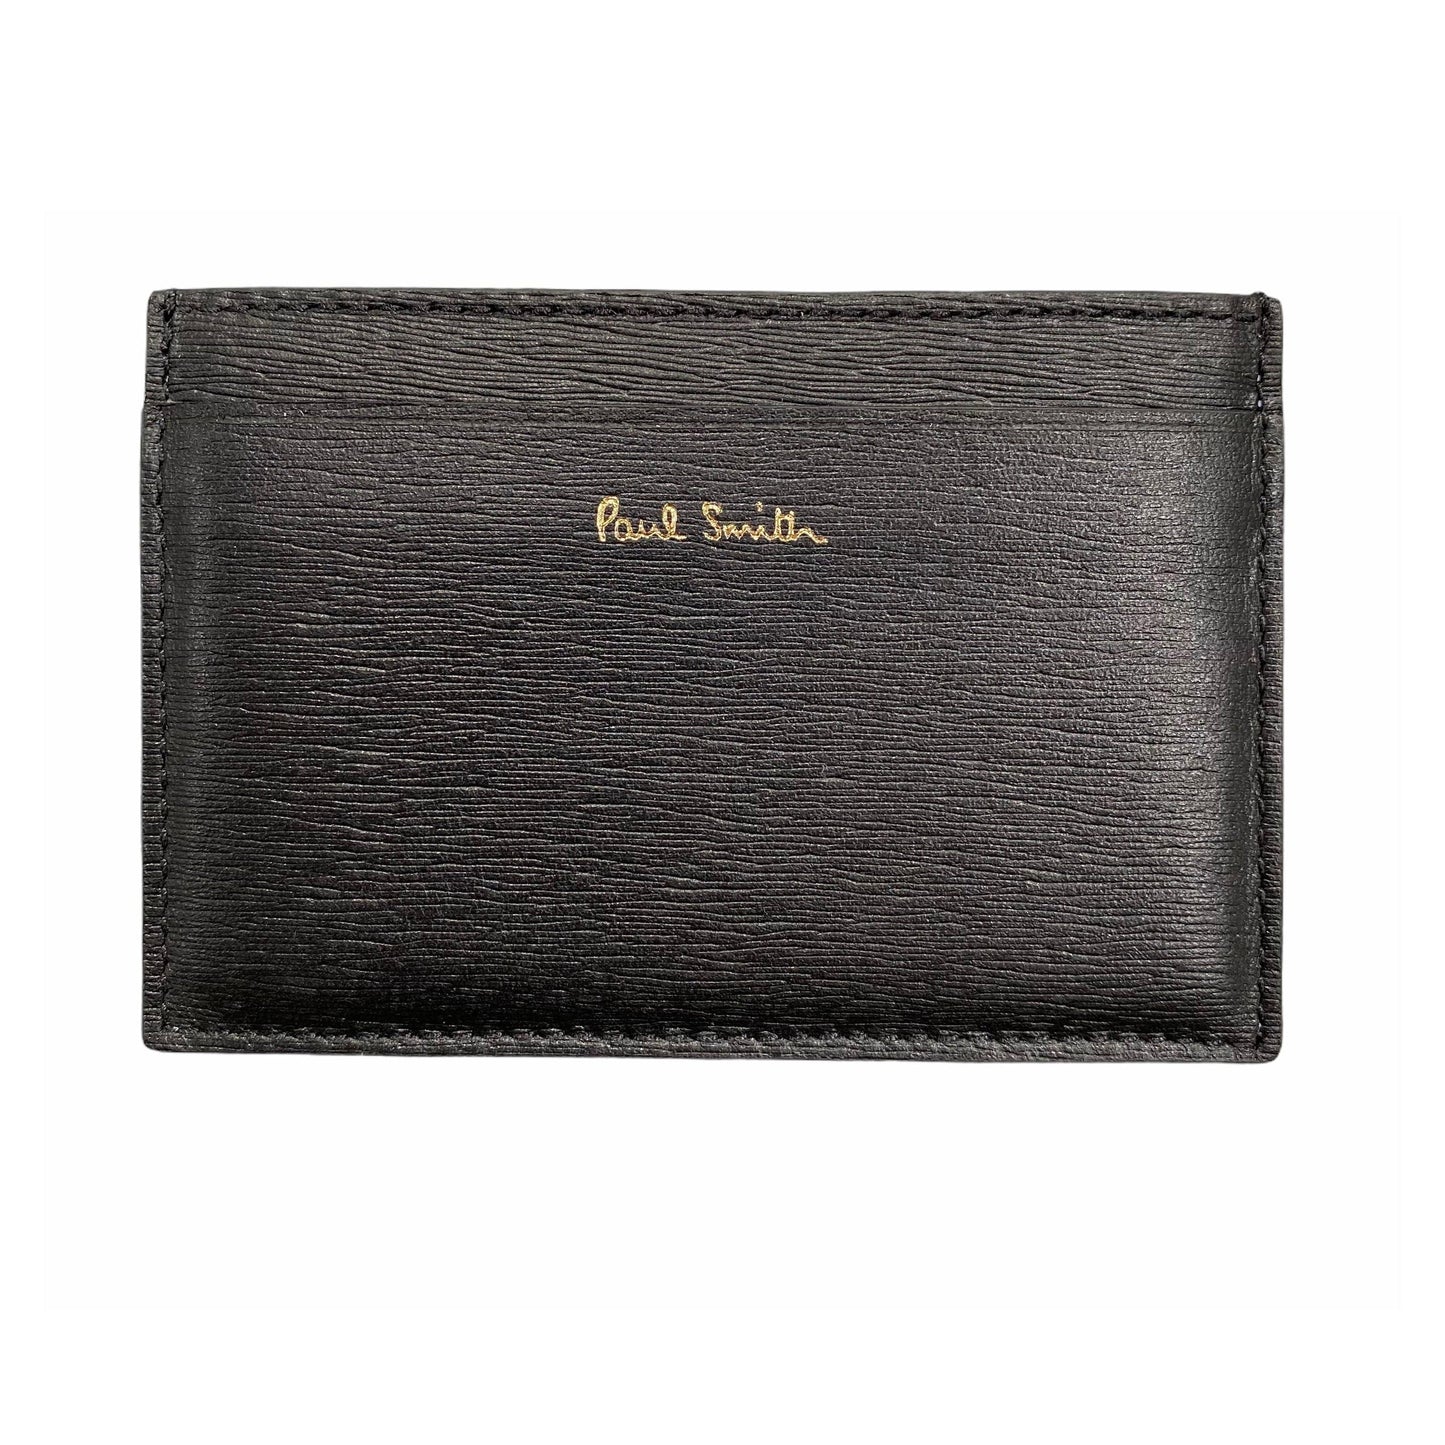 Paul Smith Black Grey Leather Cardholder - DANYOUNGUK